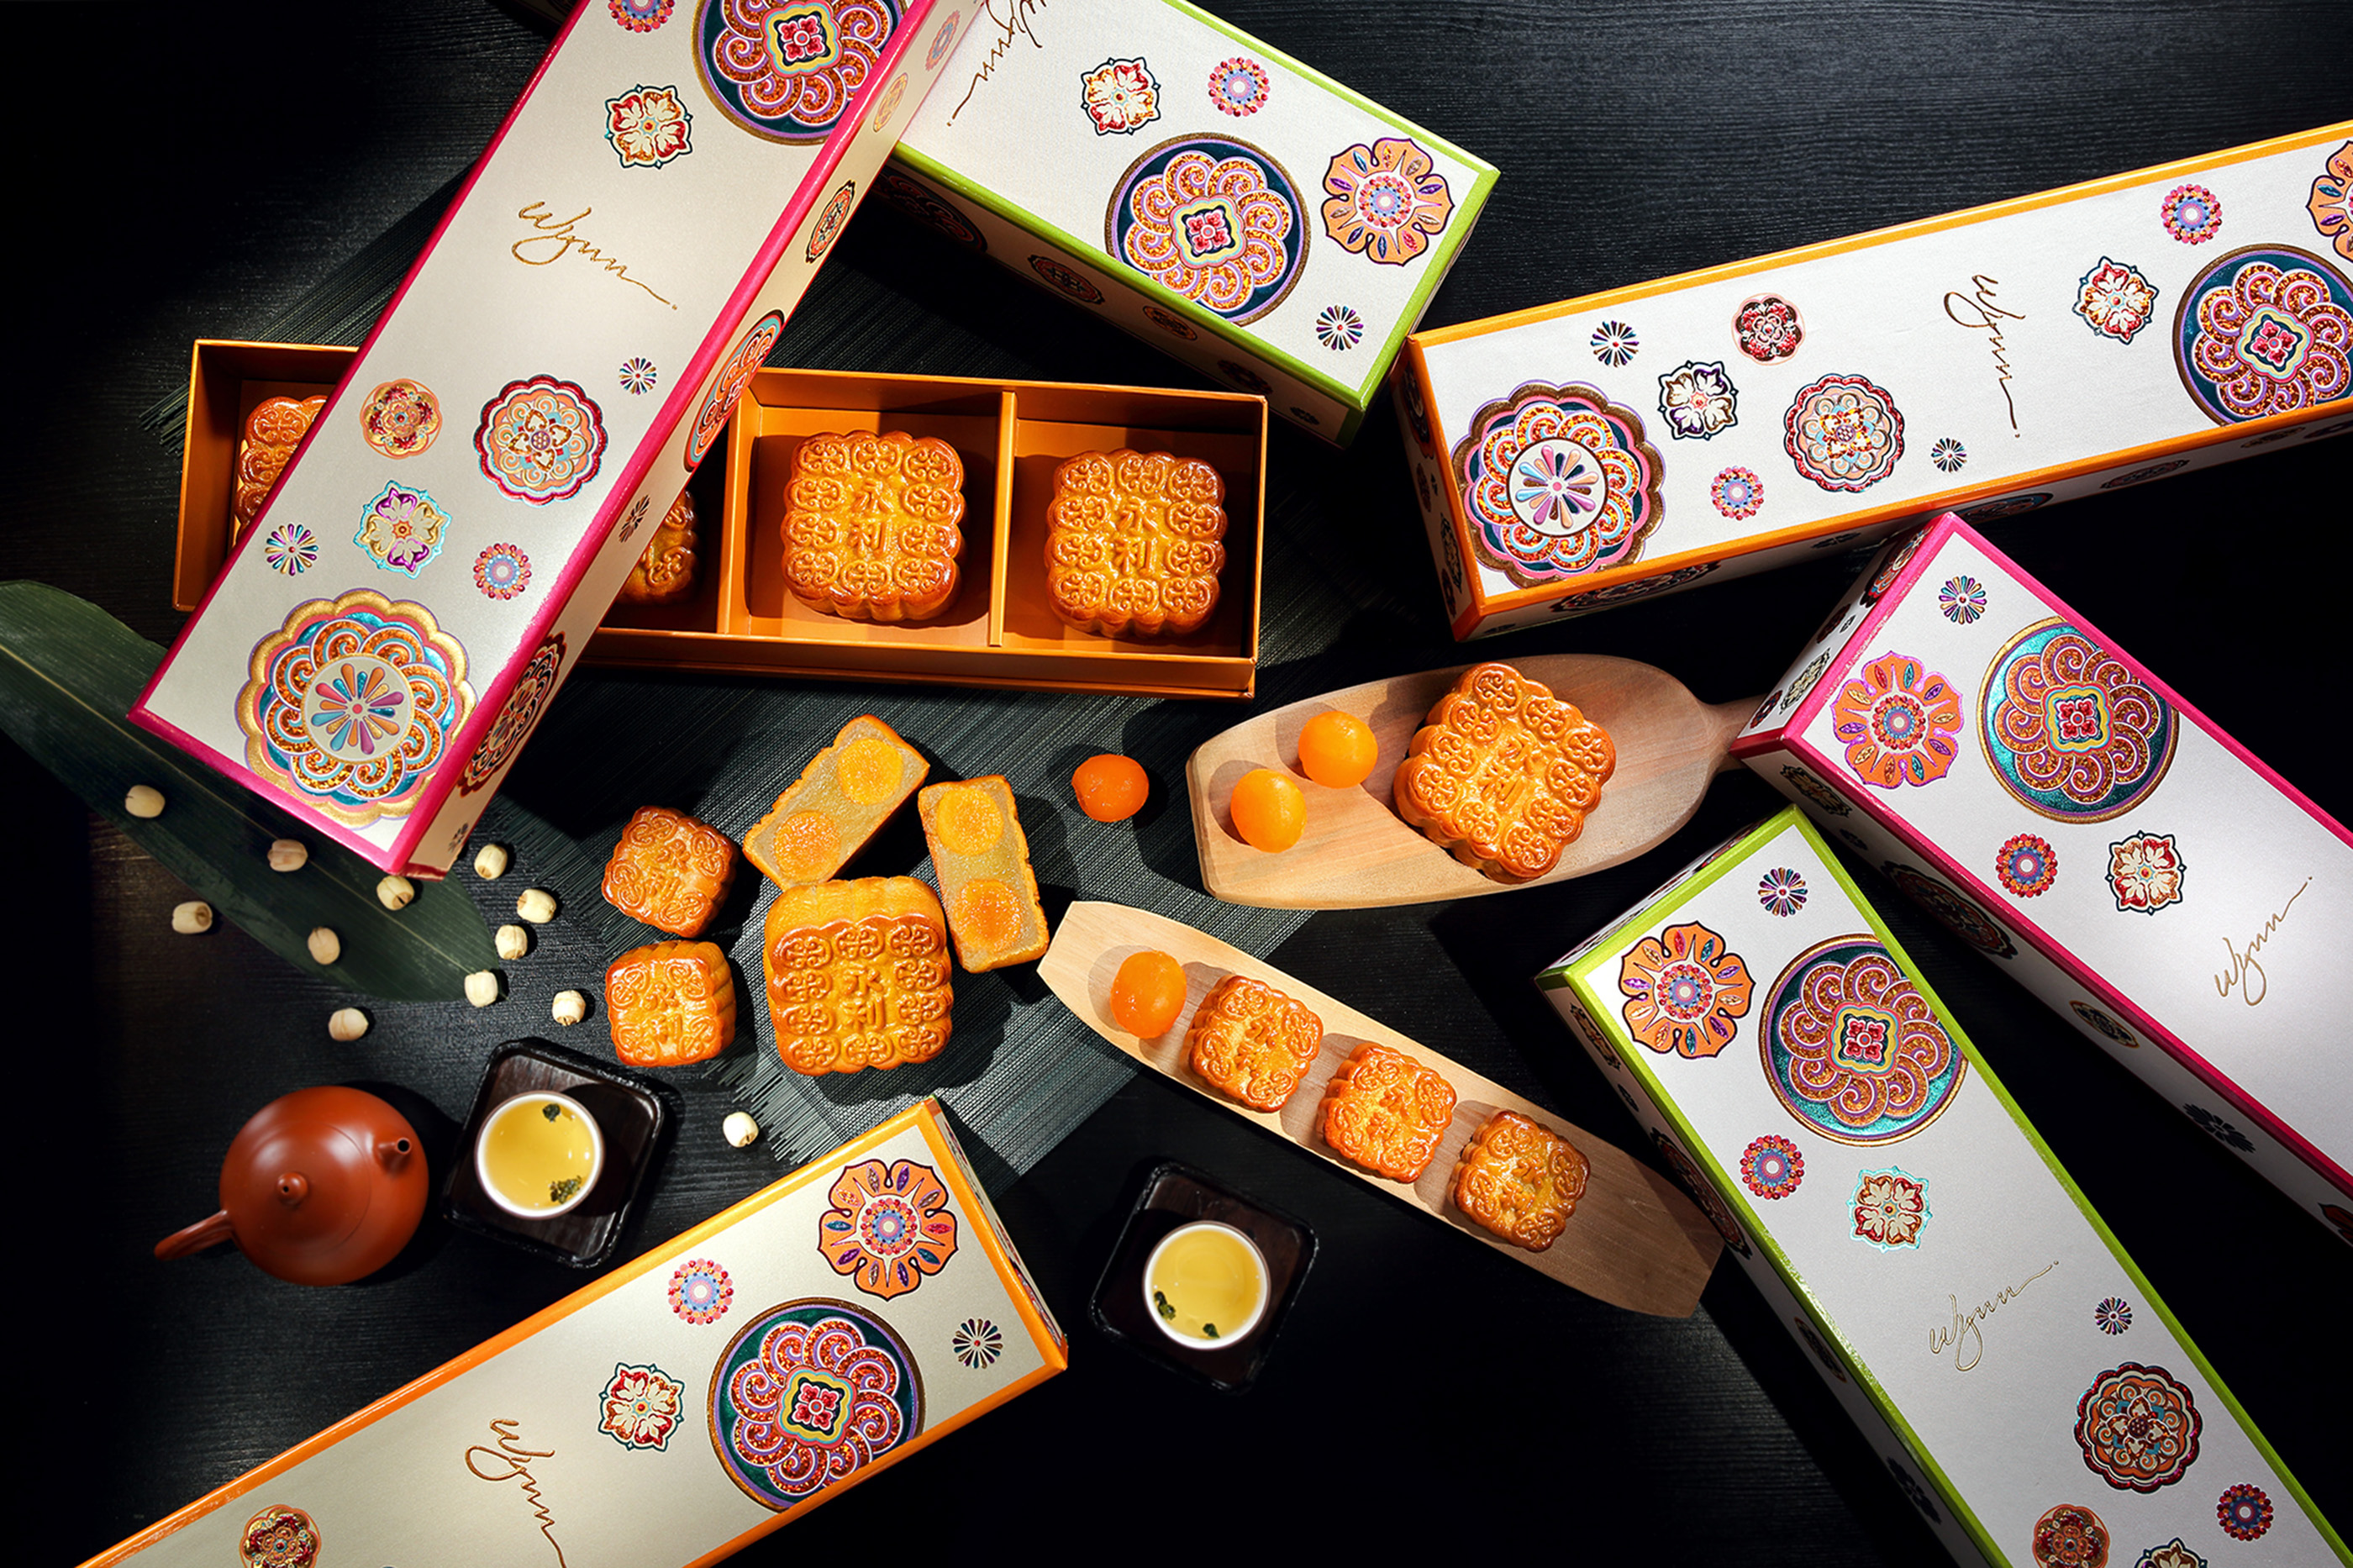 永利軒推出設計典雅時尚的精美月餅禮盒,為中秋帶來不一樣的視覺、味覺雙重享受。